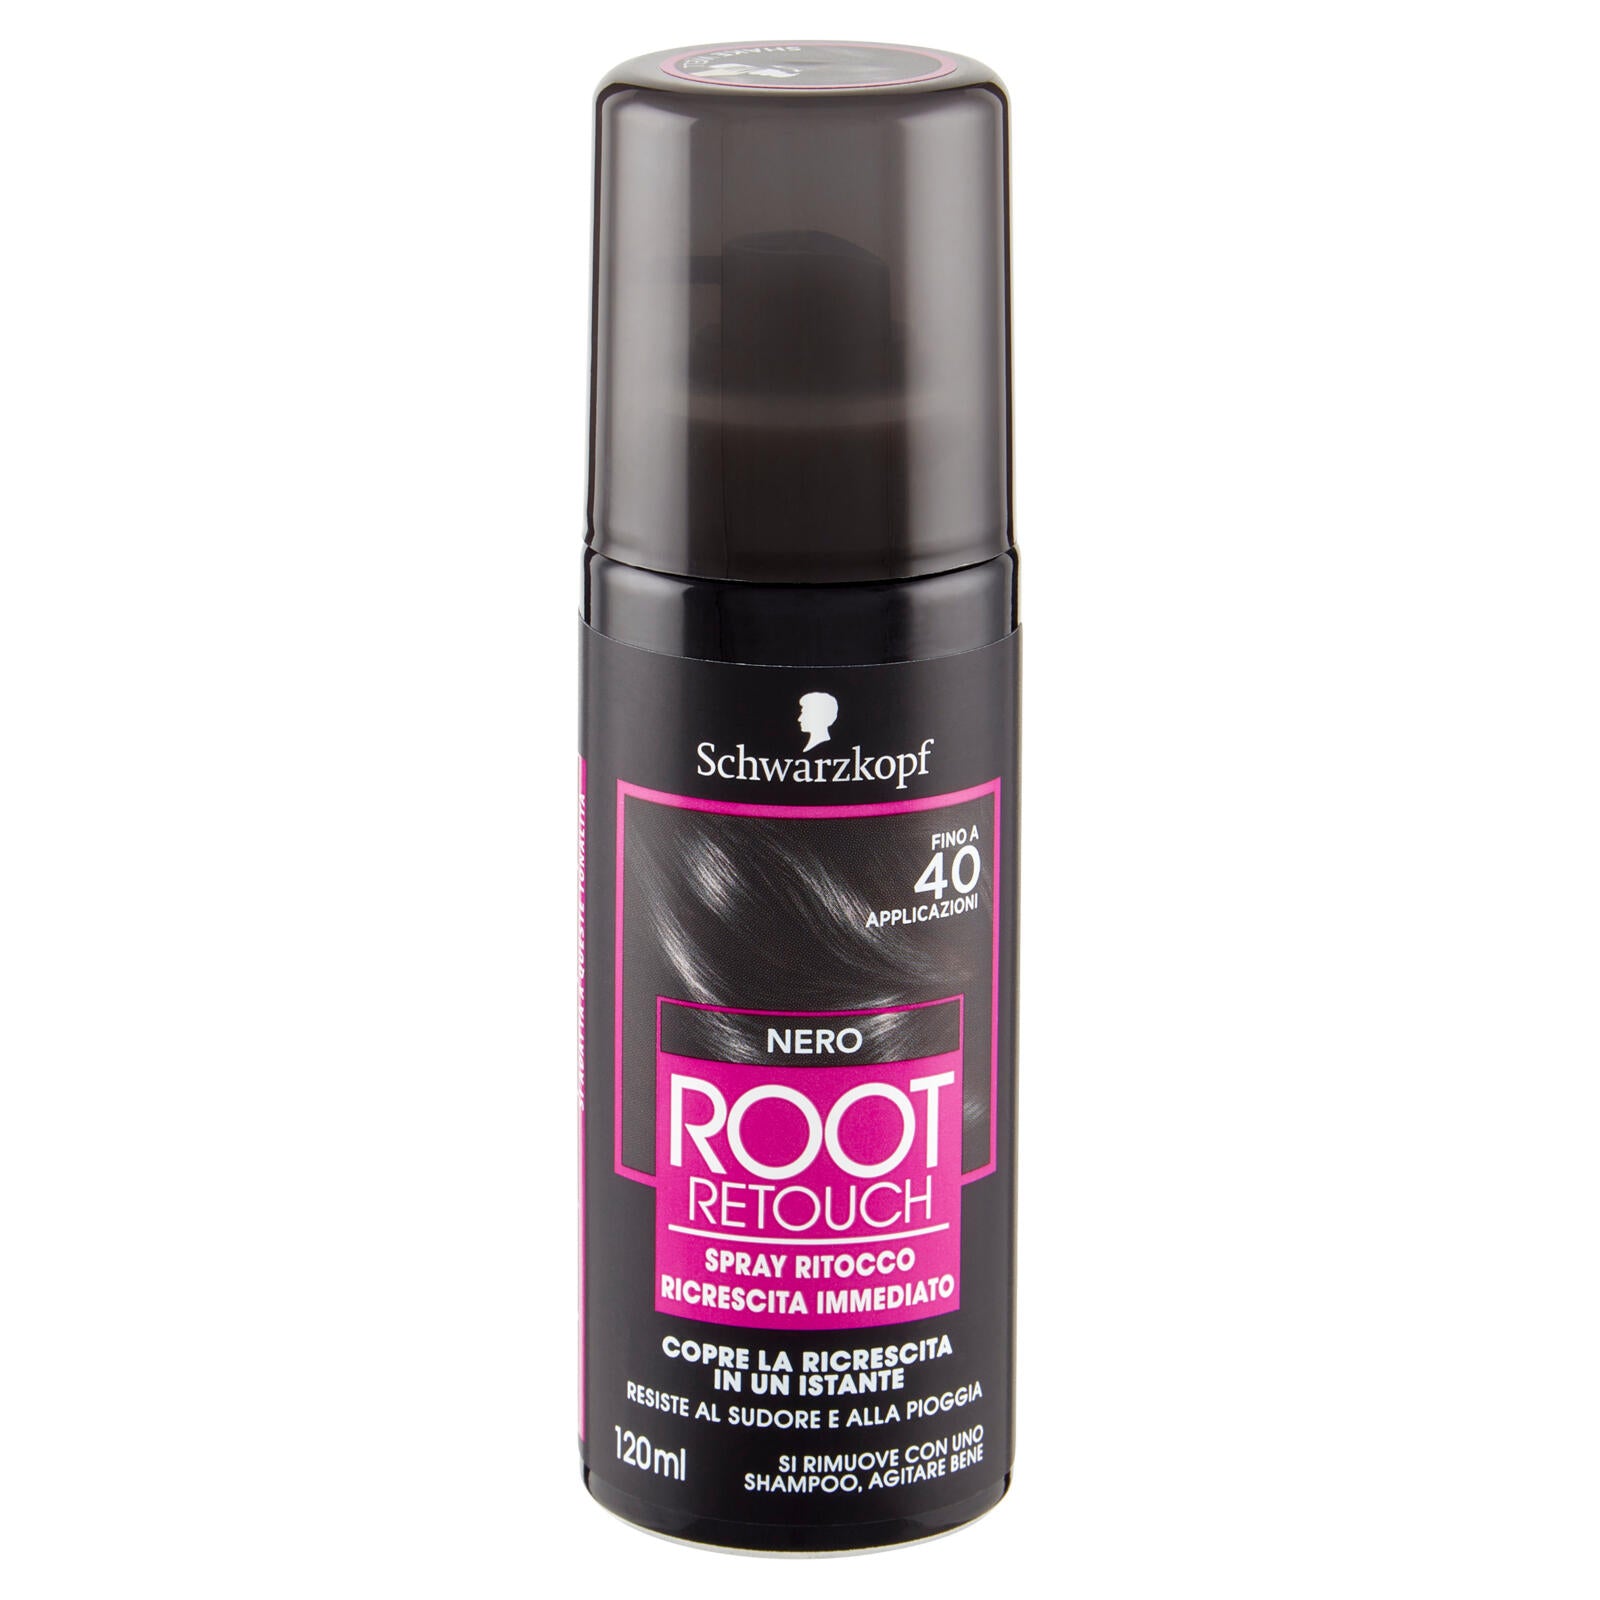 Schwarzkopf Root Retouch Spray Ritocco Ricrescita Immediato Nero 120 ml